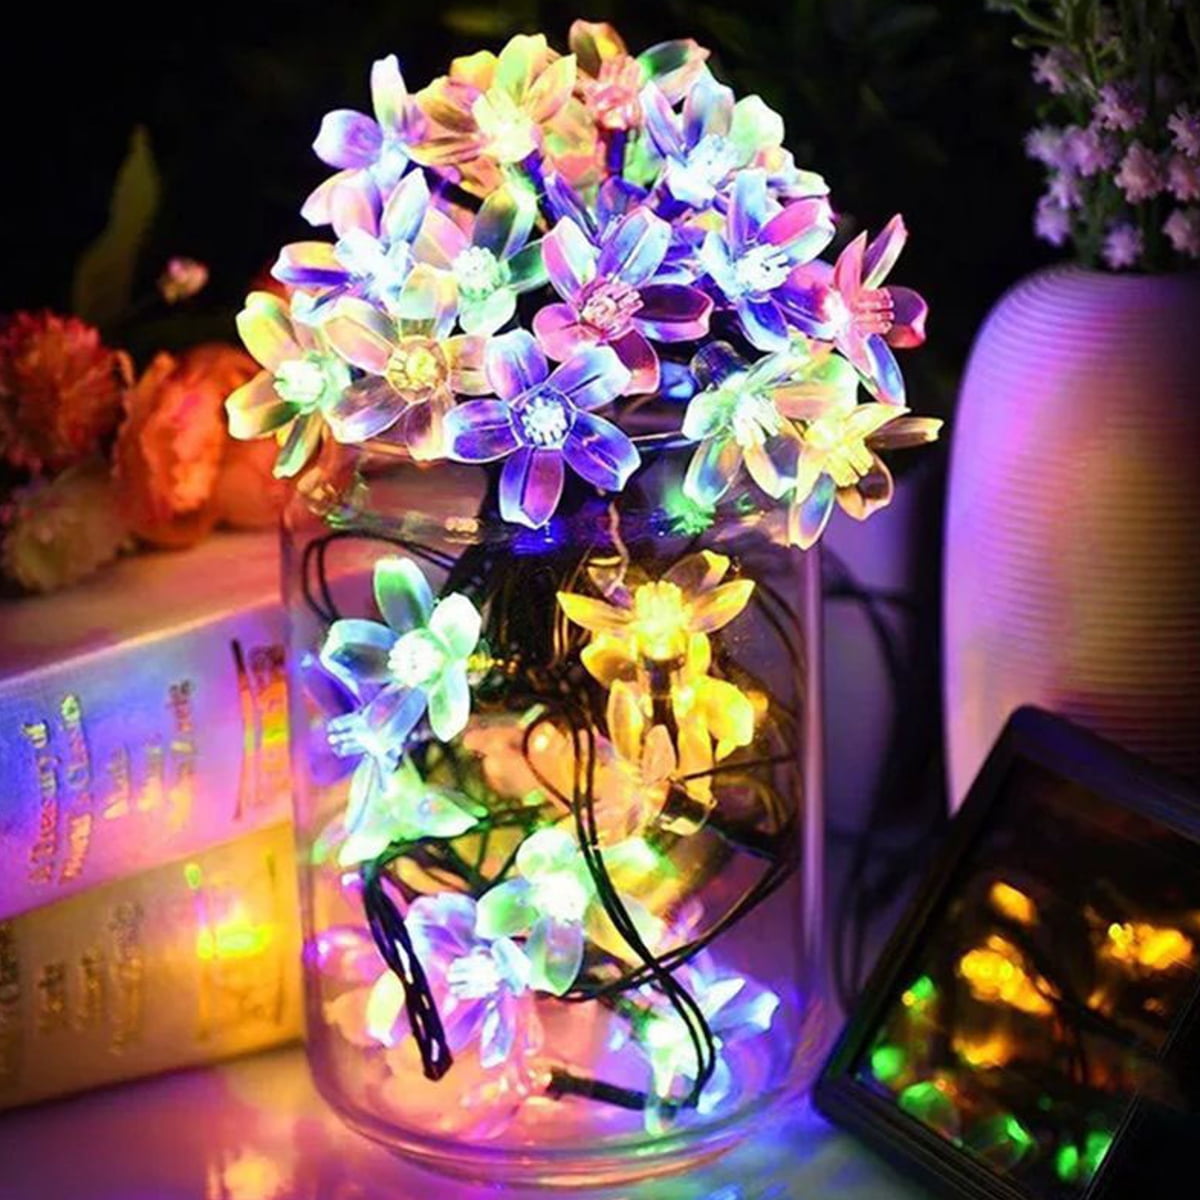 Flower Fairy Lights String 50 LED Solar Power Flower Garden Wedding Decoration 